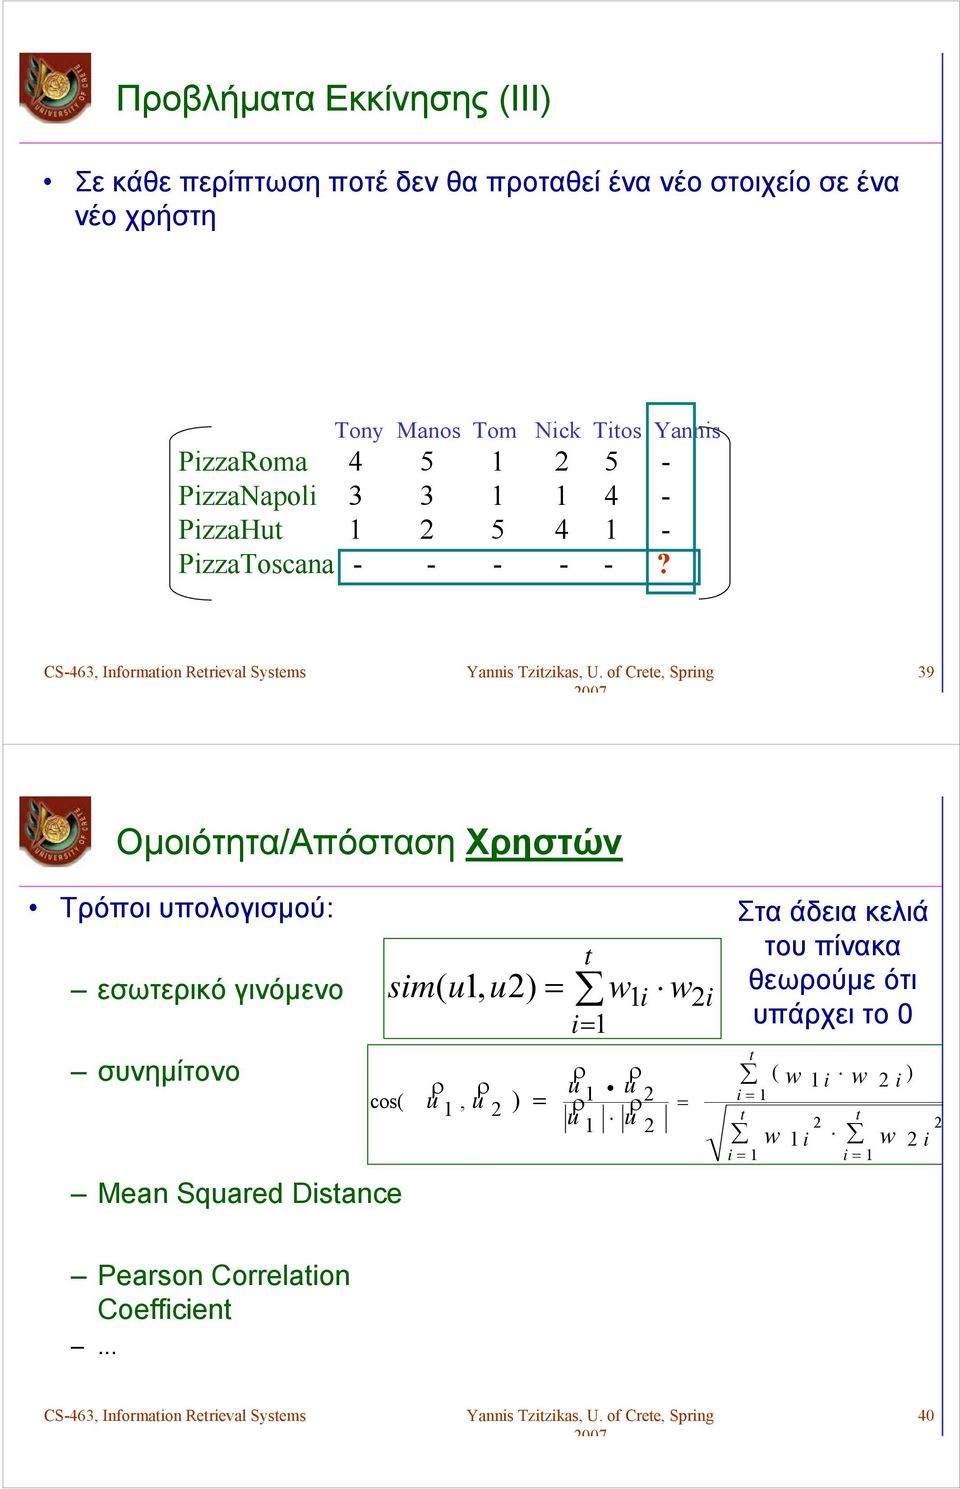 39 Ομοιότητα/Απόσταση Χρηστών Τρόποι υπολογισμού: εσωτερικό γινόμενο συνημίτονο Mean Squared Distance sim( u1, u) = t i= 1 ρ ρ ρ ρ u